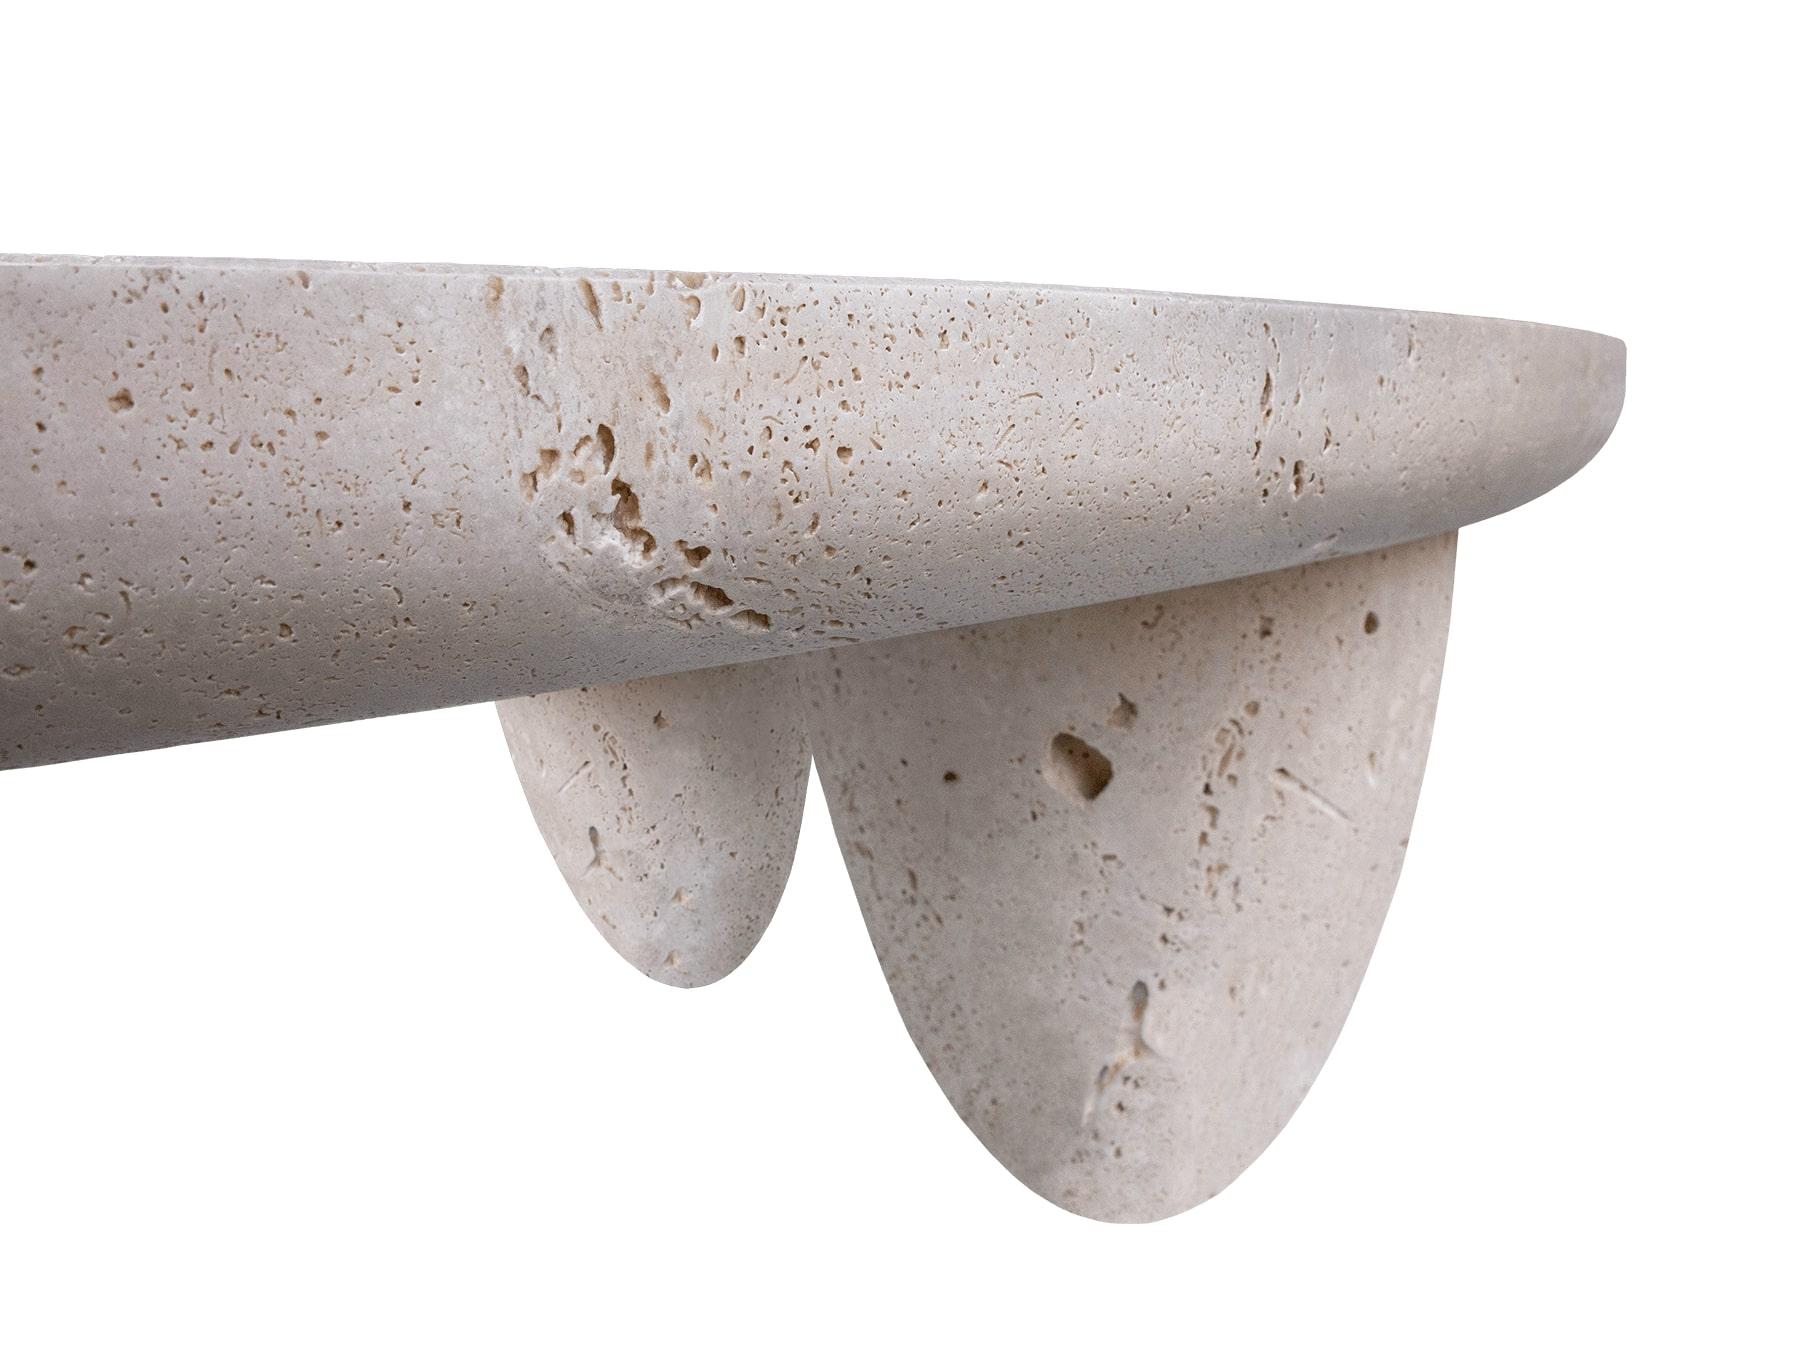 Zeitgenössischer Minimalistischer Runder Couchtisch Bilecik

Lunarys Center Table ist ein herausragendes Stück modernen Designs. Ein wichtiger Couchtisch für ein zeitgenössisches Wohnzimmerprojekt scheint direkt aus dem Raum zu kommen. Der